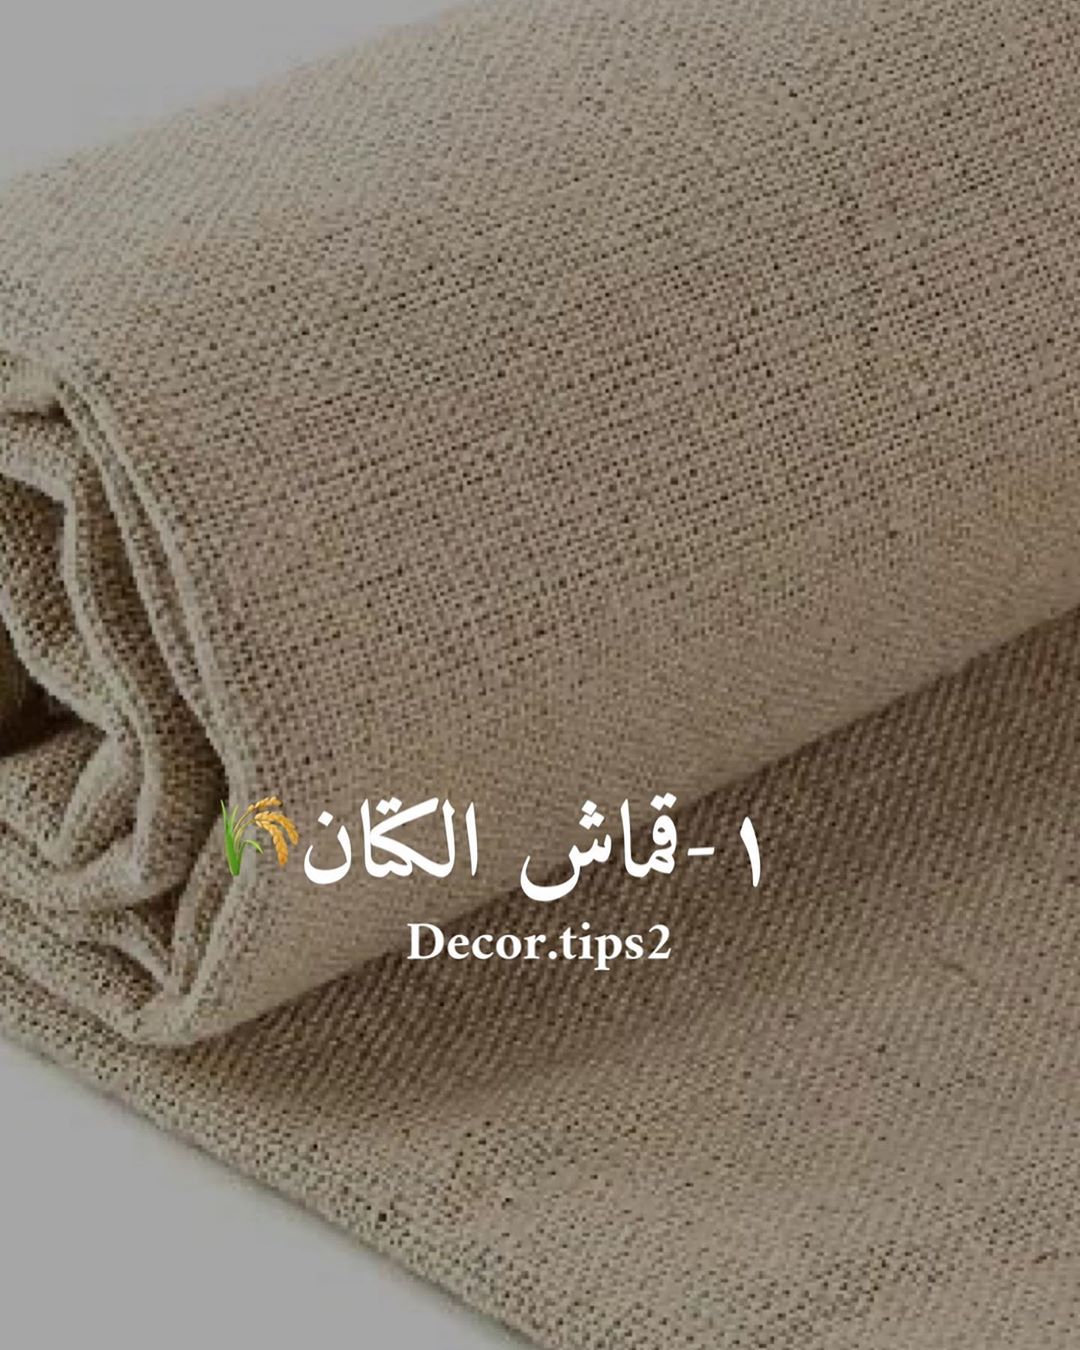 . ‏قماش الكتان Linen fabric ‏
.
يعتبر من أفضل أنواع الأقمشة ويتميز بعدة مميزا